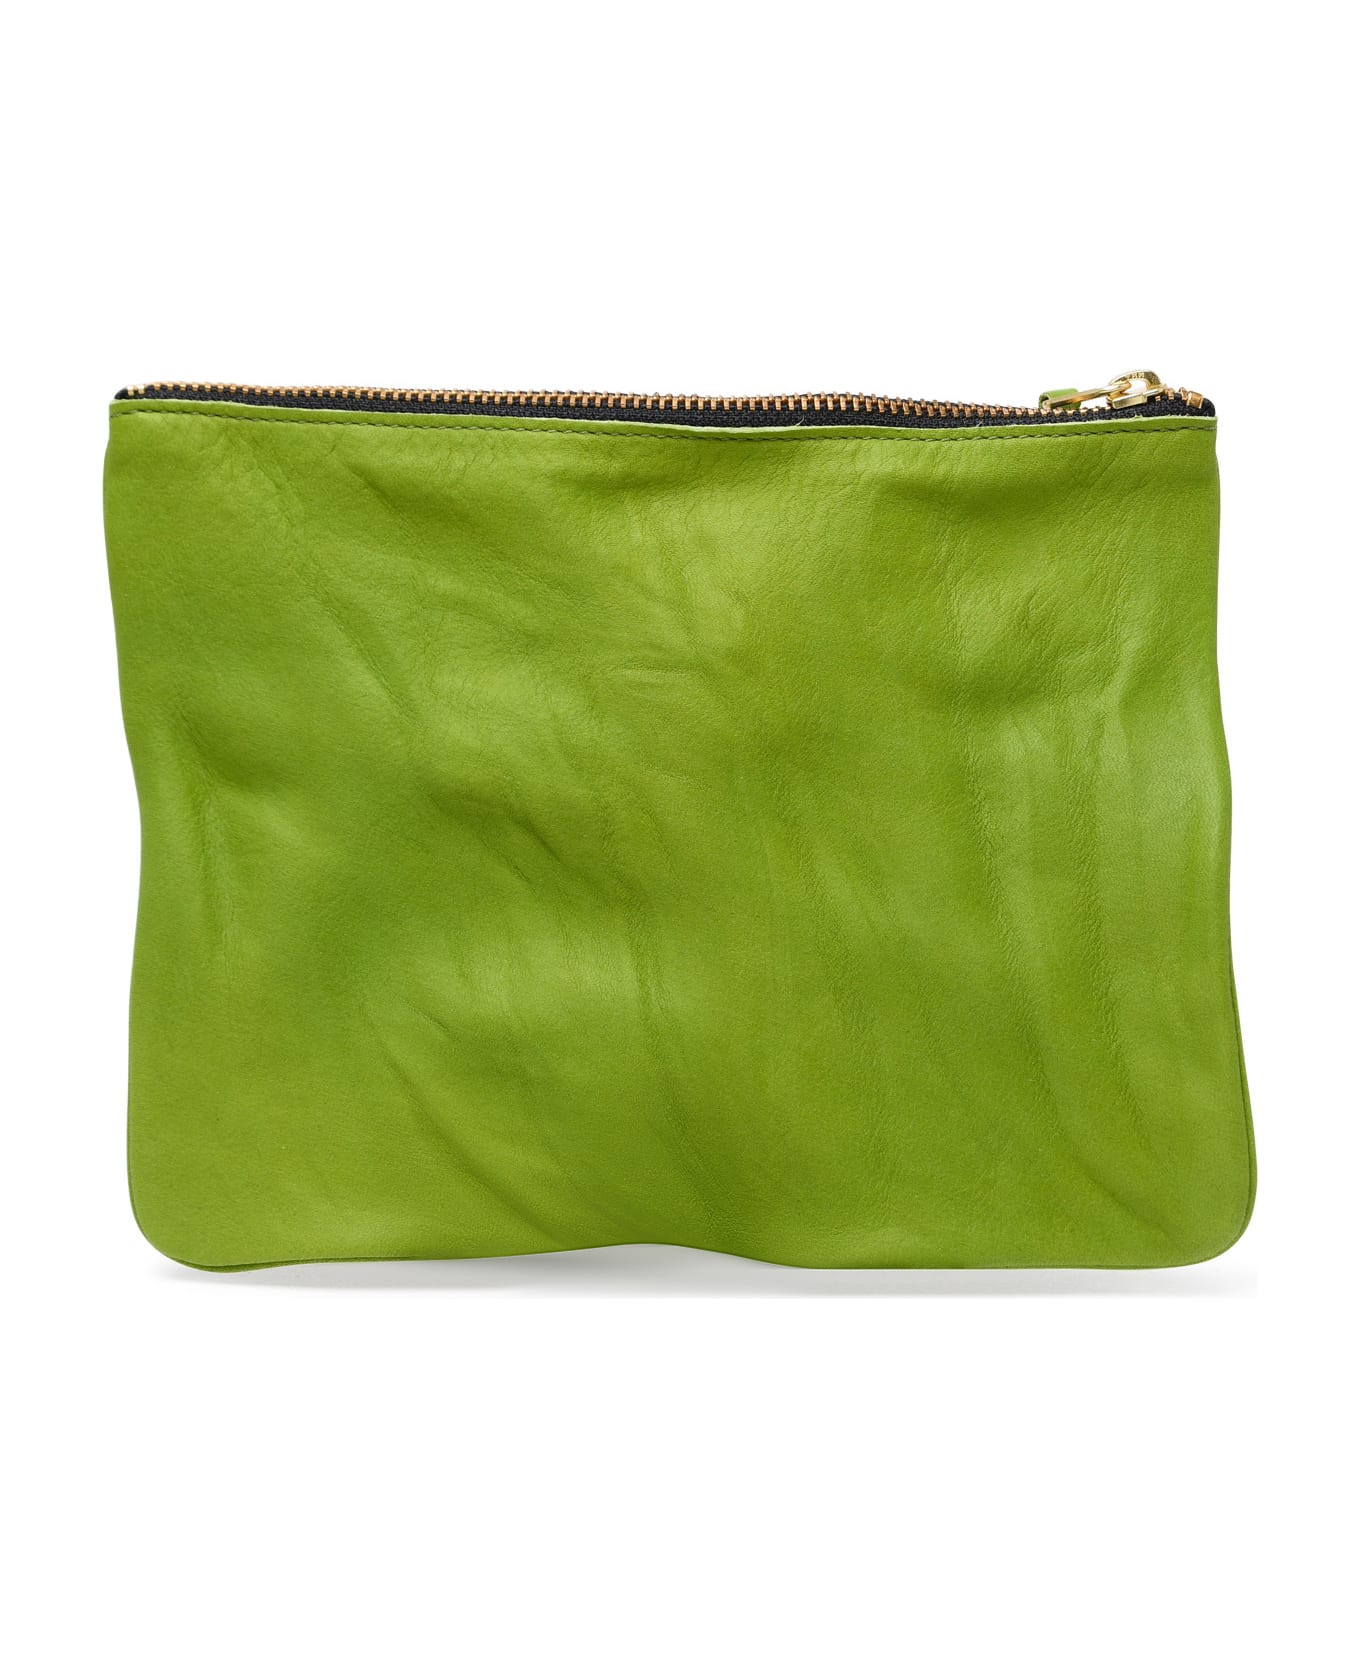 Comme des Garçons Wallet Green Leather Envelope - Green